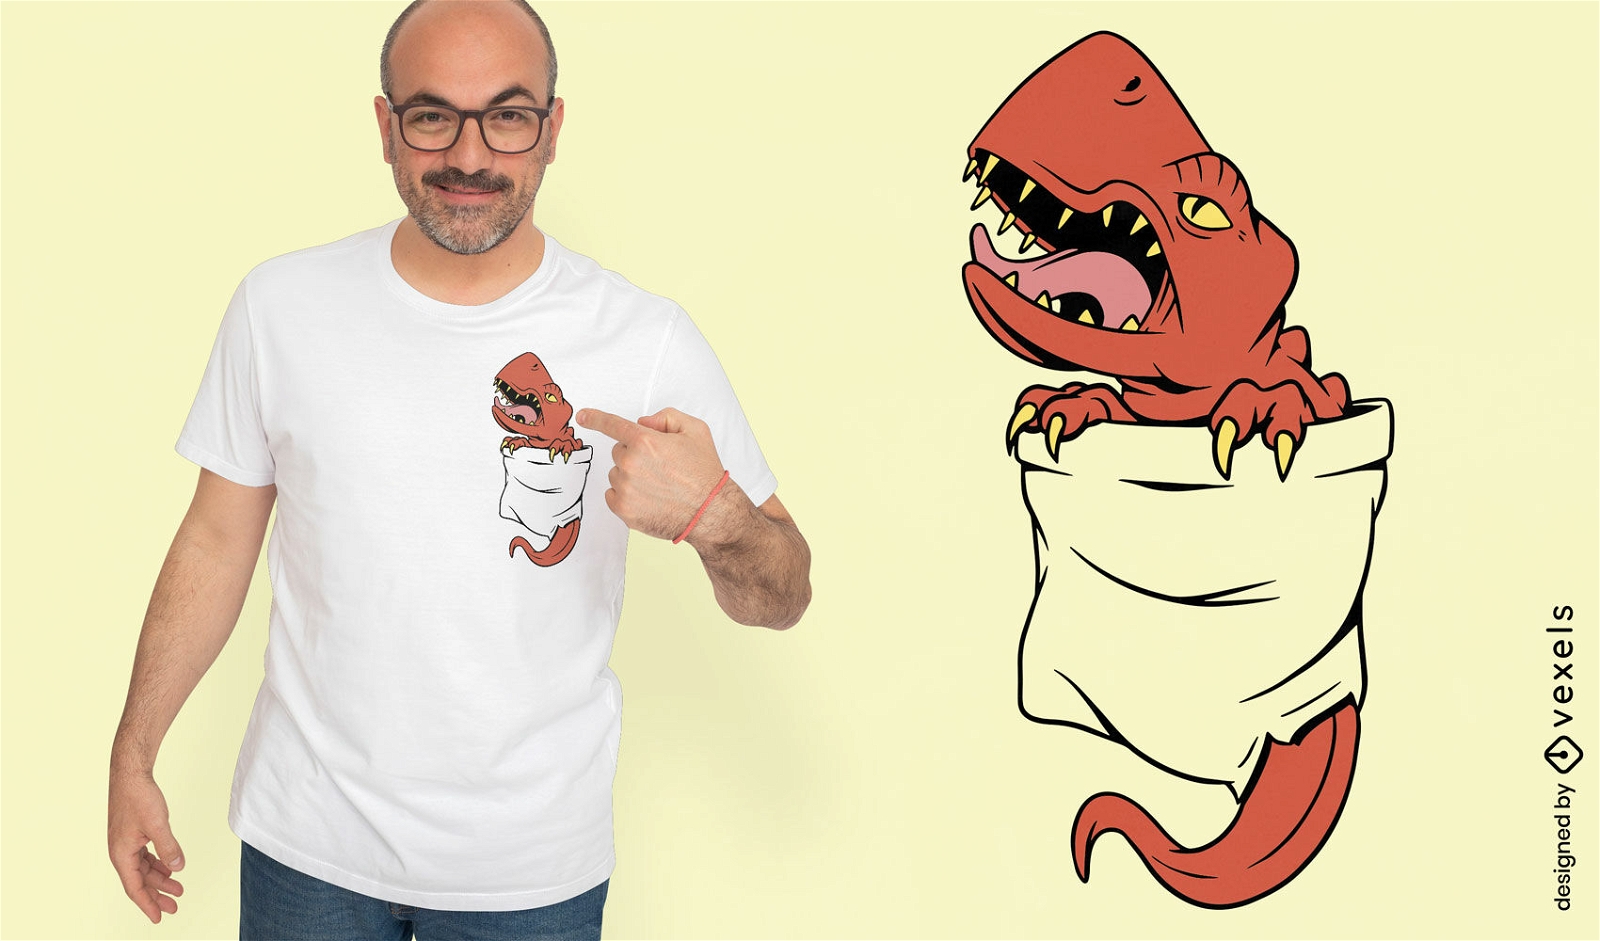 Pocket t-rex t-shirt design